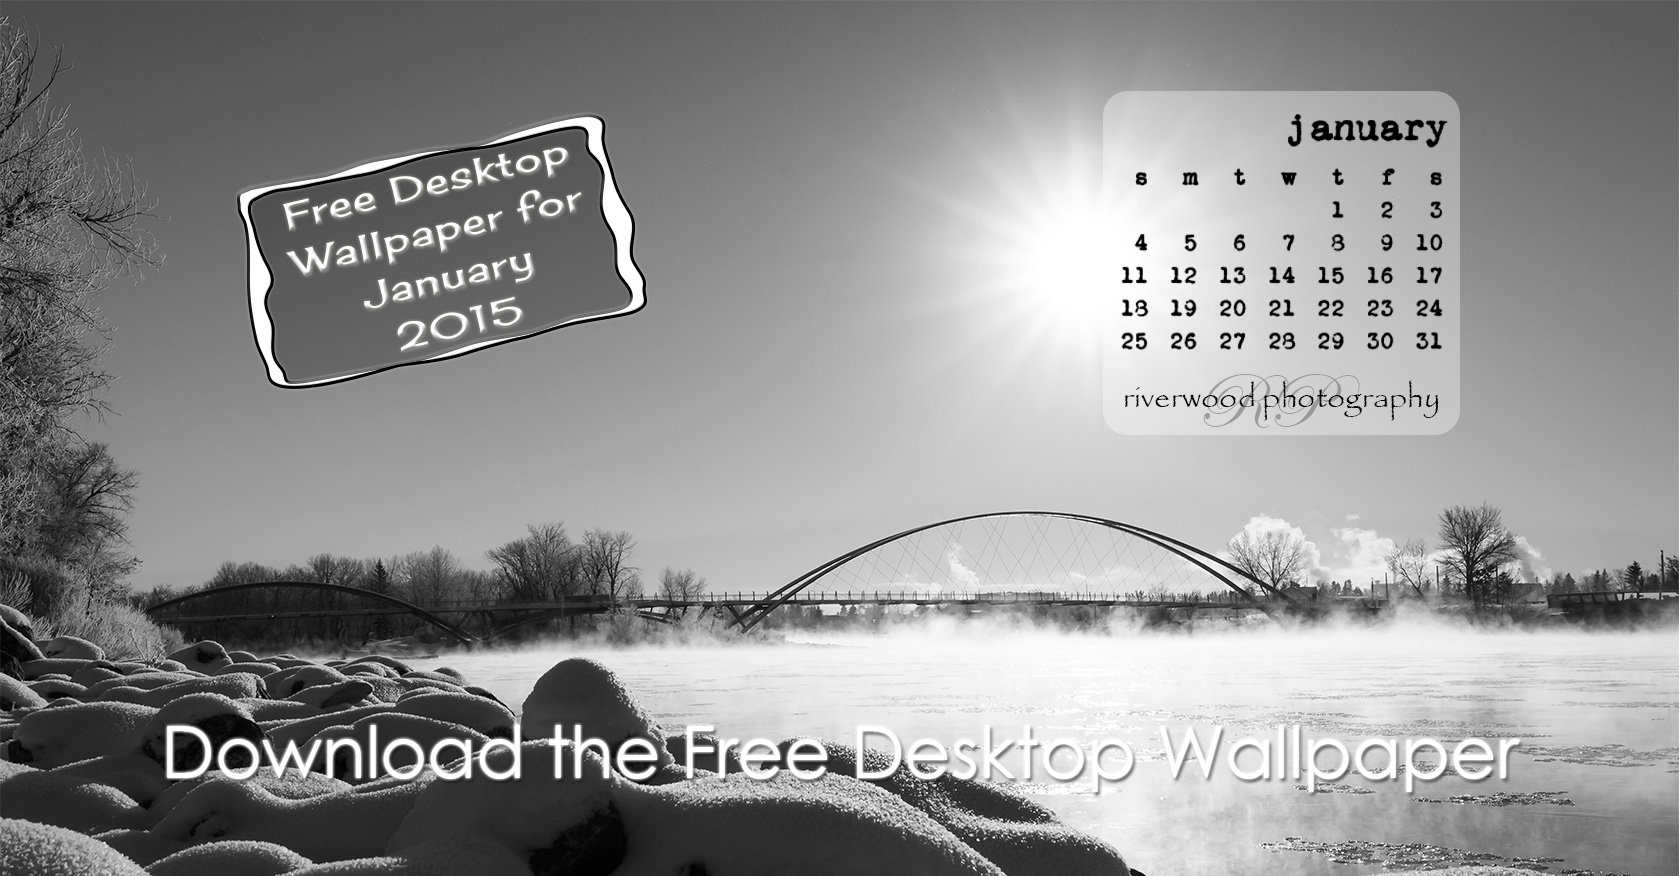 Free Desktop Wallpaper for January 2015